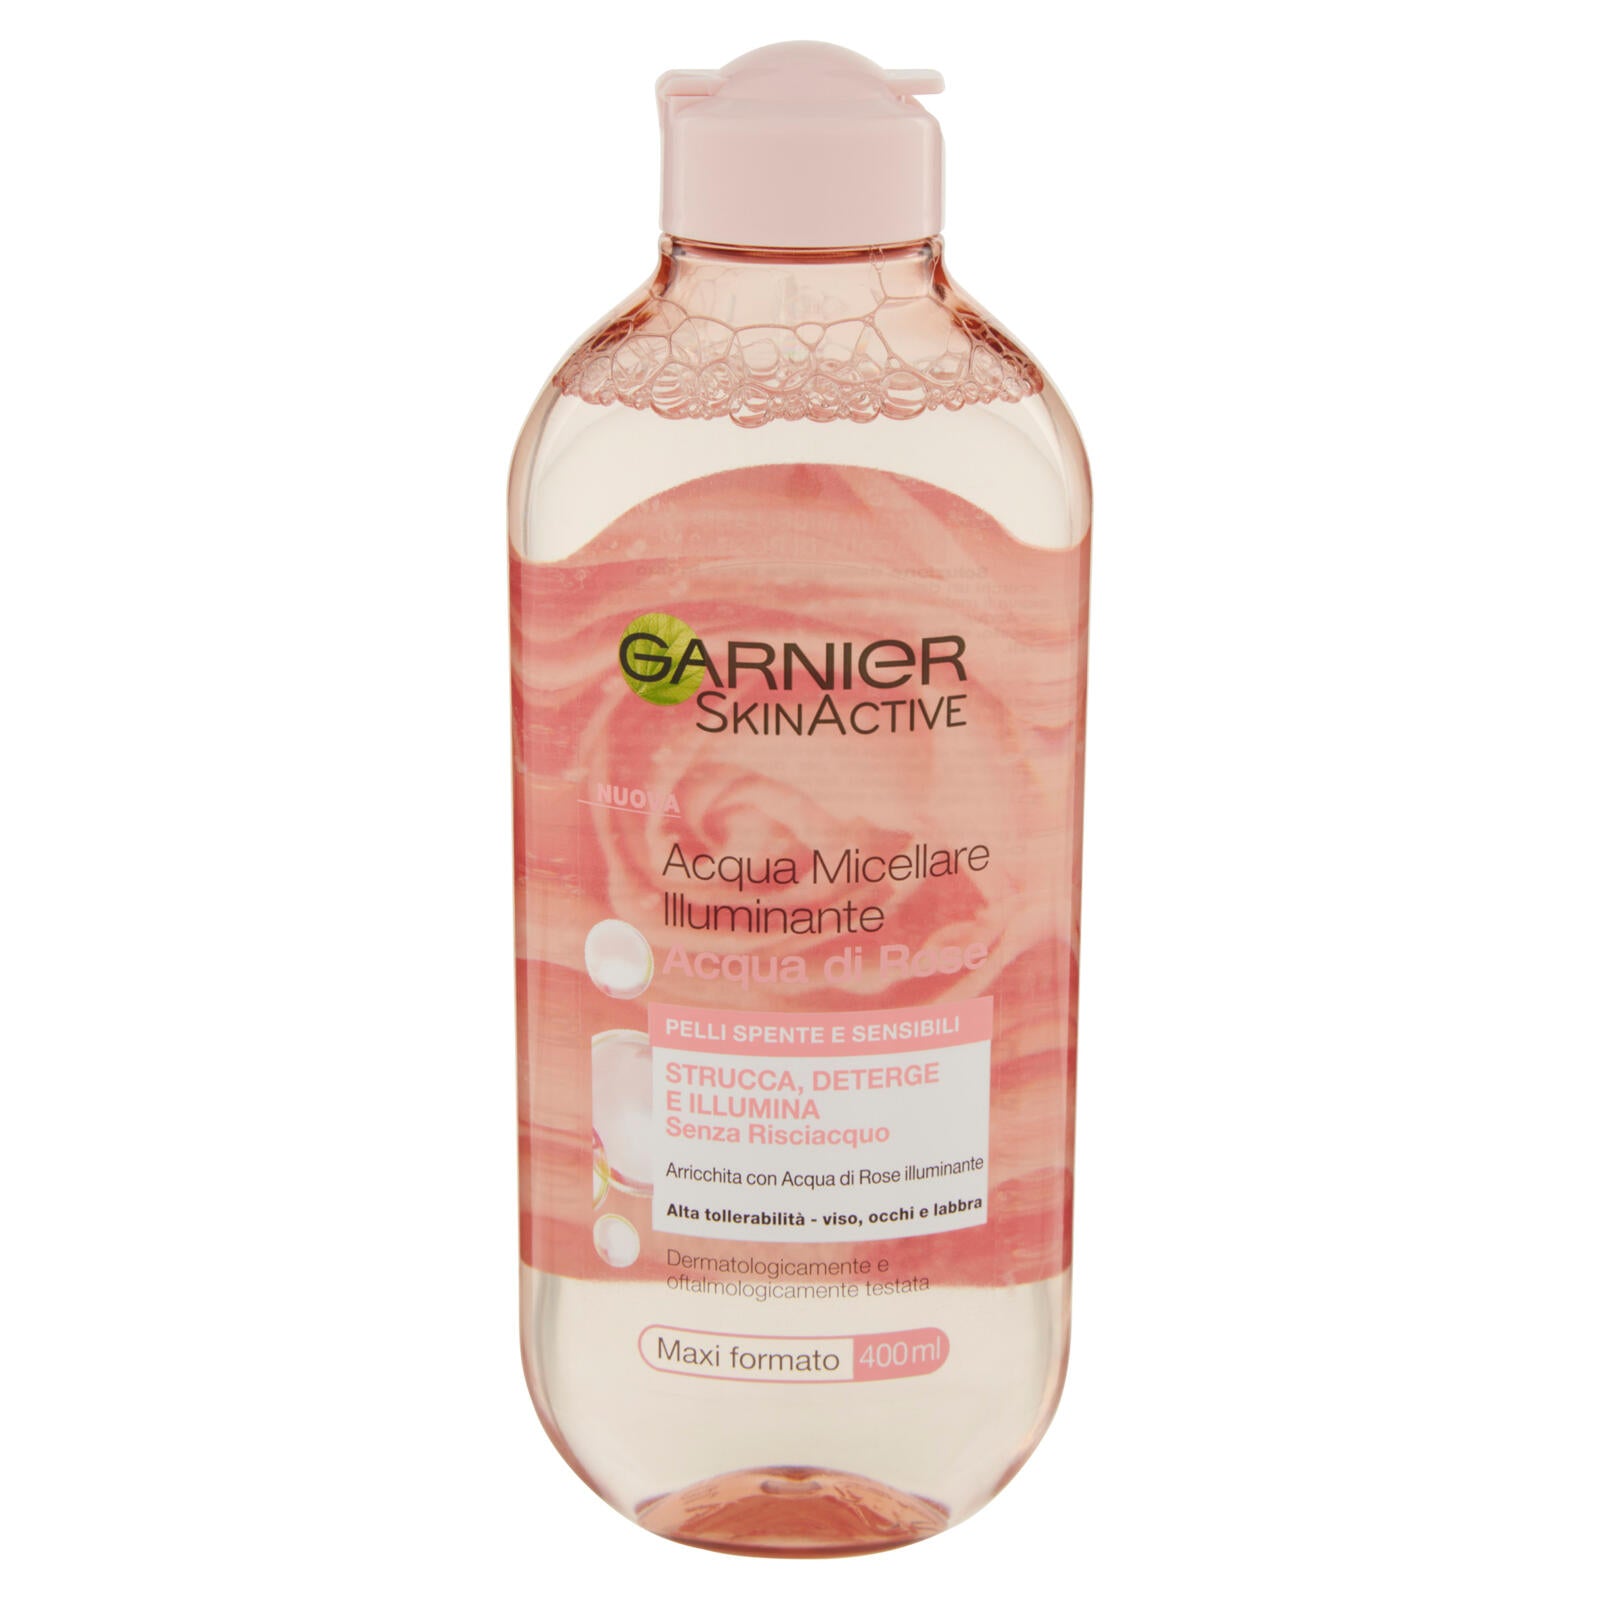 Garnier Acqua Micellare illuminante Acqua di Rose Micellare, per pelli spente e sensibili, 400 ml